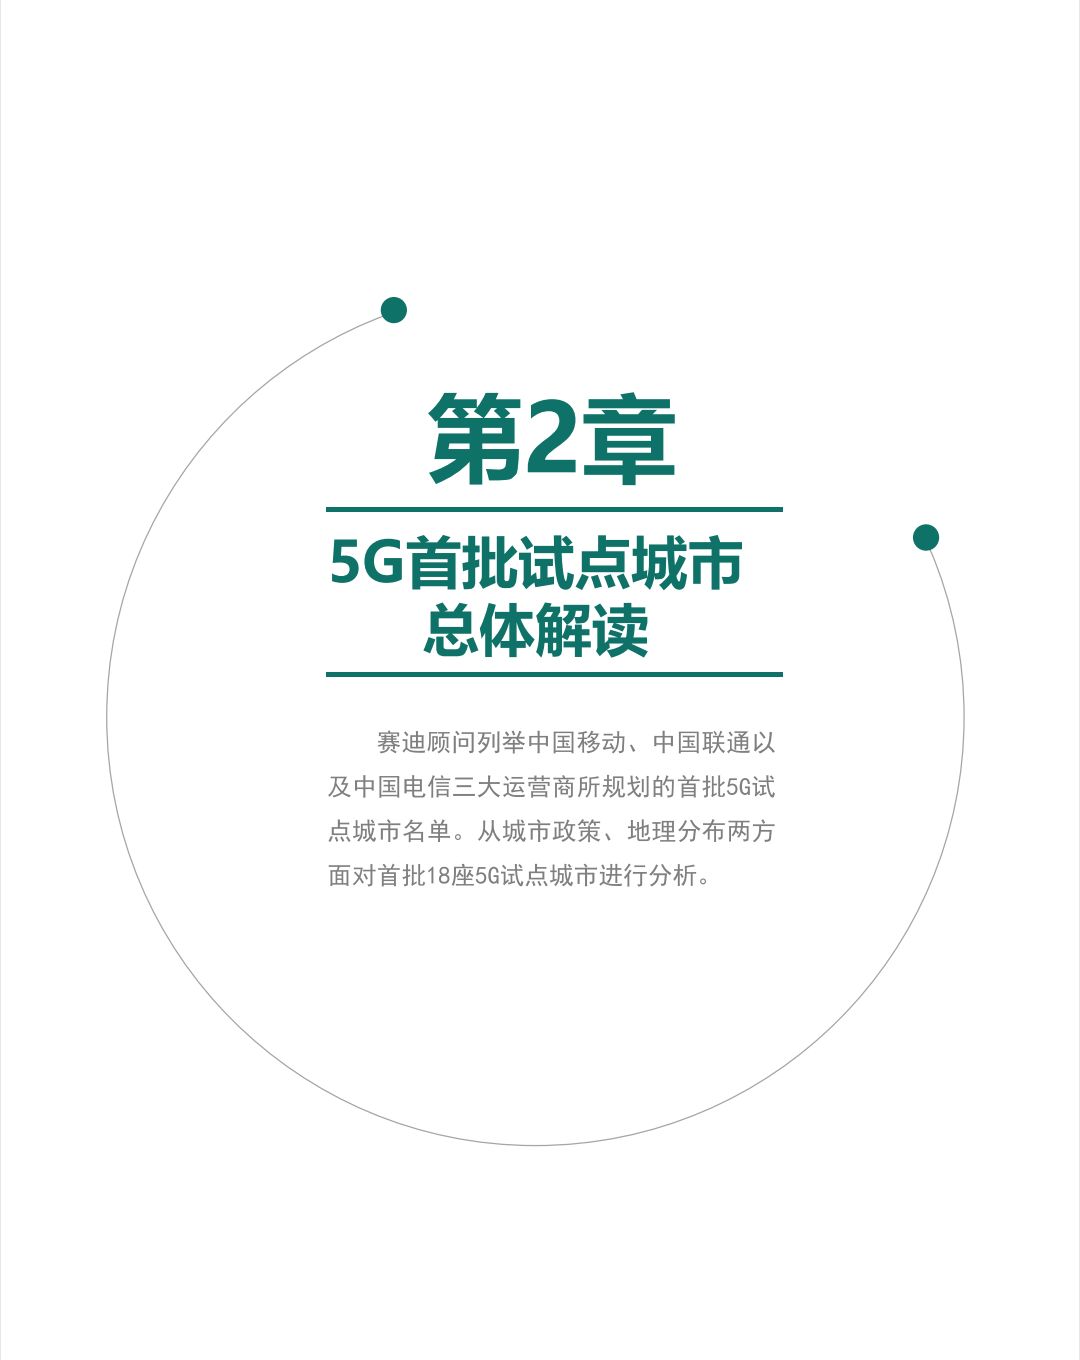 5G投资5年后将迎2000亿高点 5G手机保有量超过10亿台